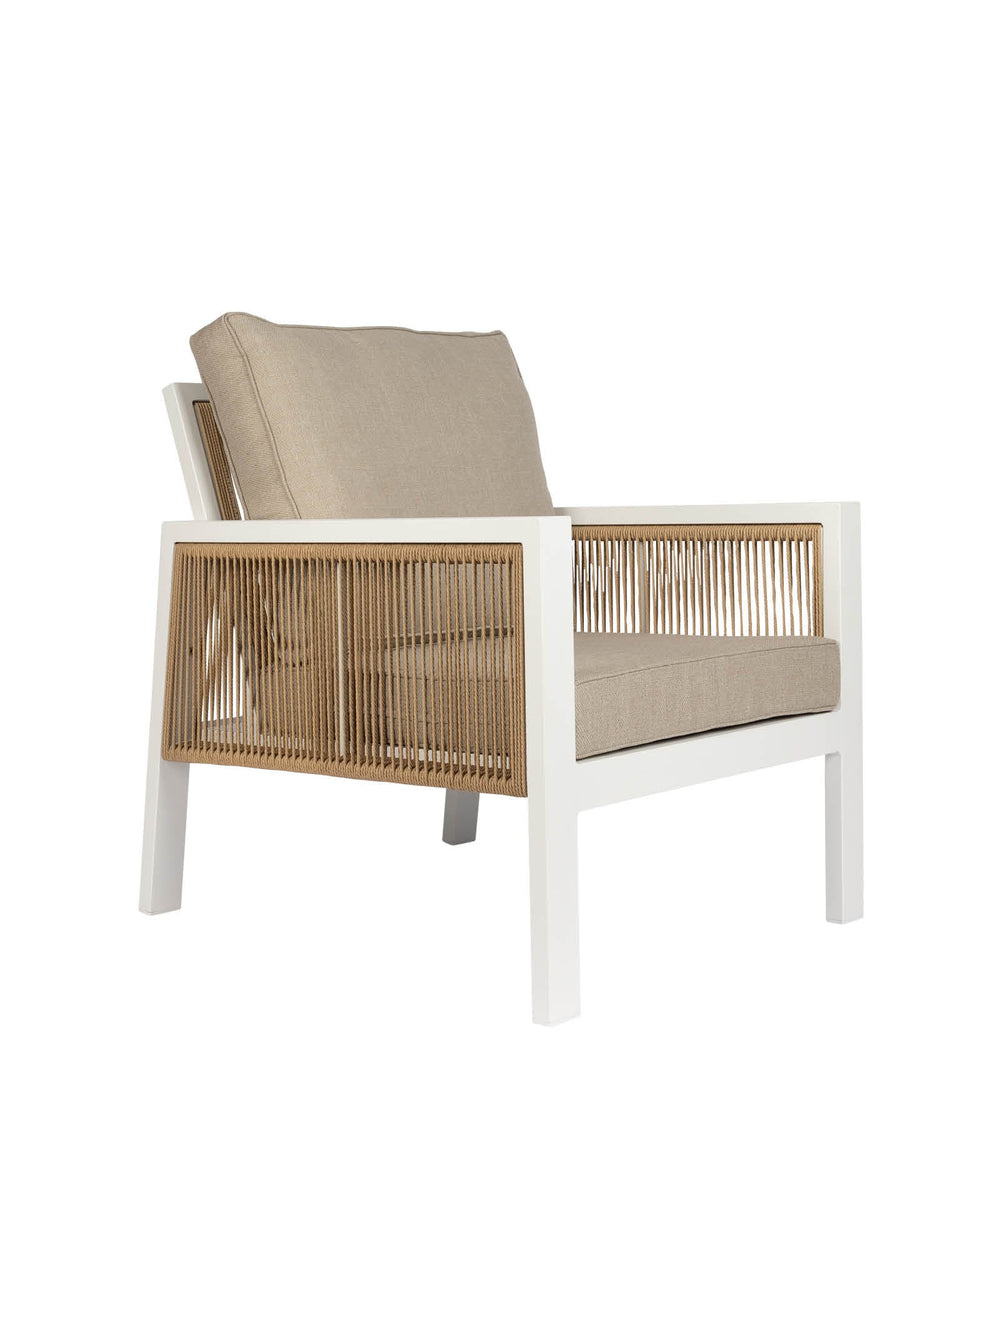 Atlas Outdoor Chair - Outdoor Furniture - Chair- Hertex Haus Online - badge_fully_outdoor